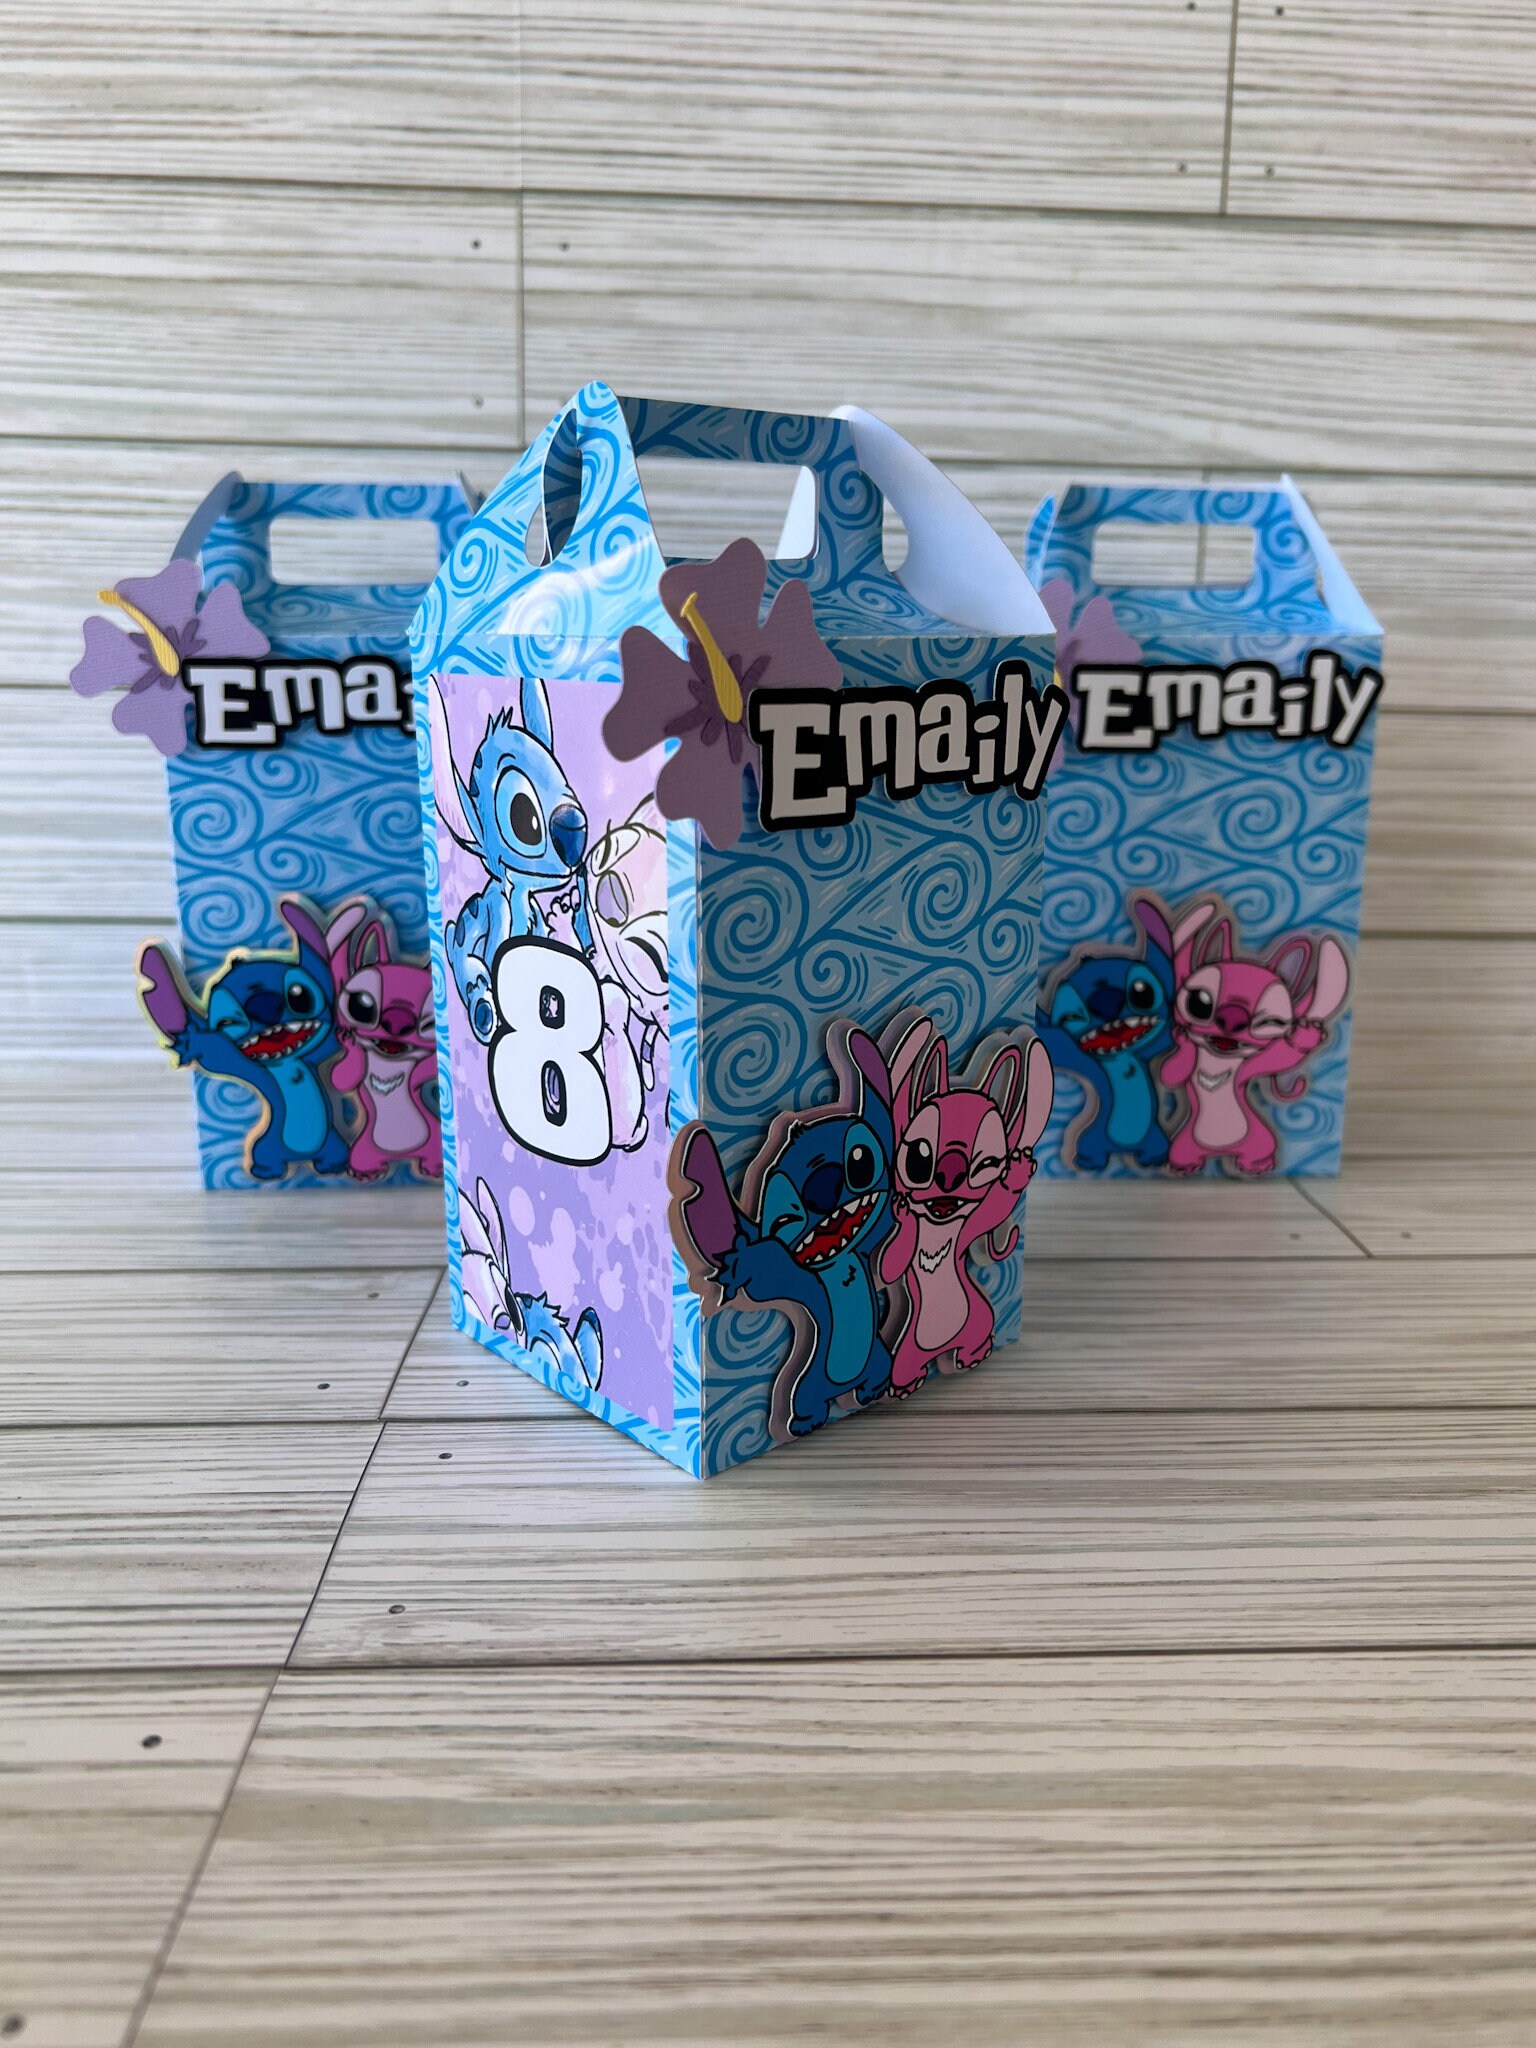 Stitch Favor Boxes, Stitch Party Decor, Stitch Birthday, Stitch